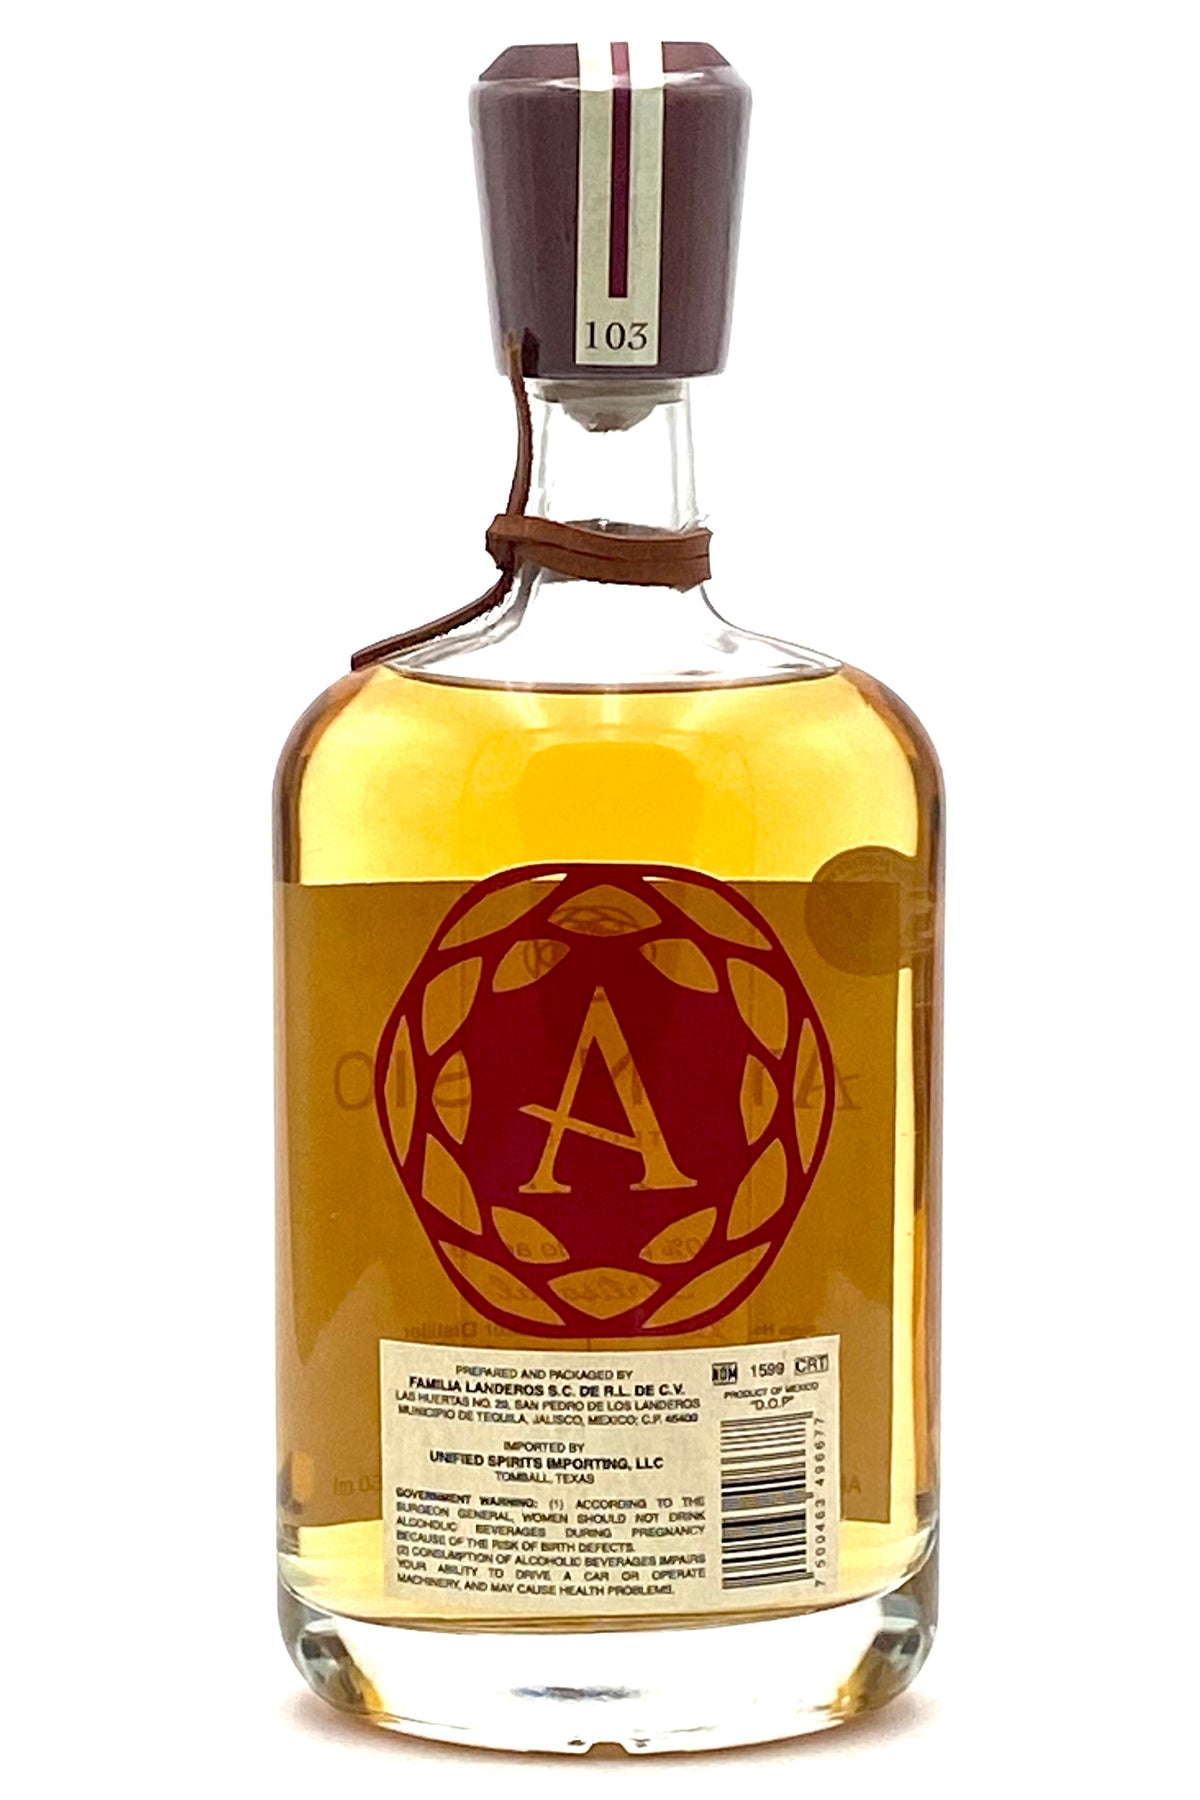 Atanasio Anejo Tequila